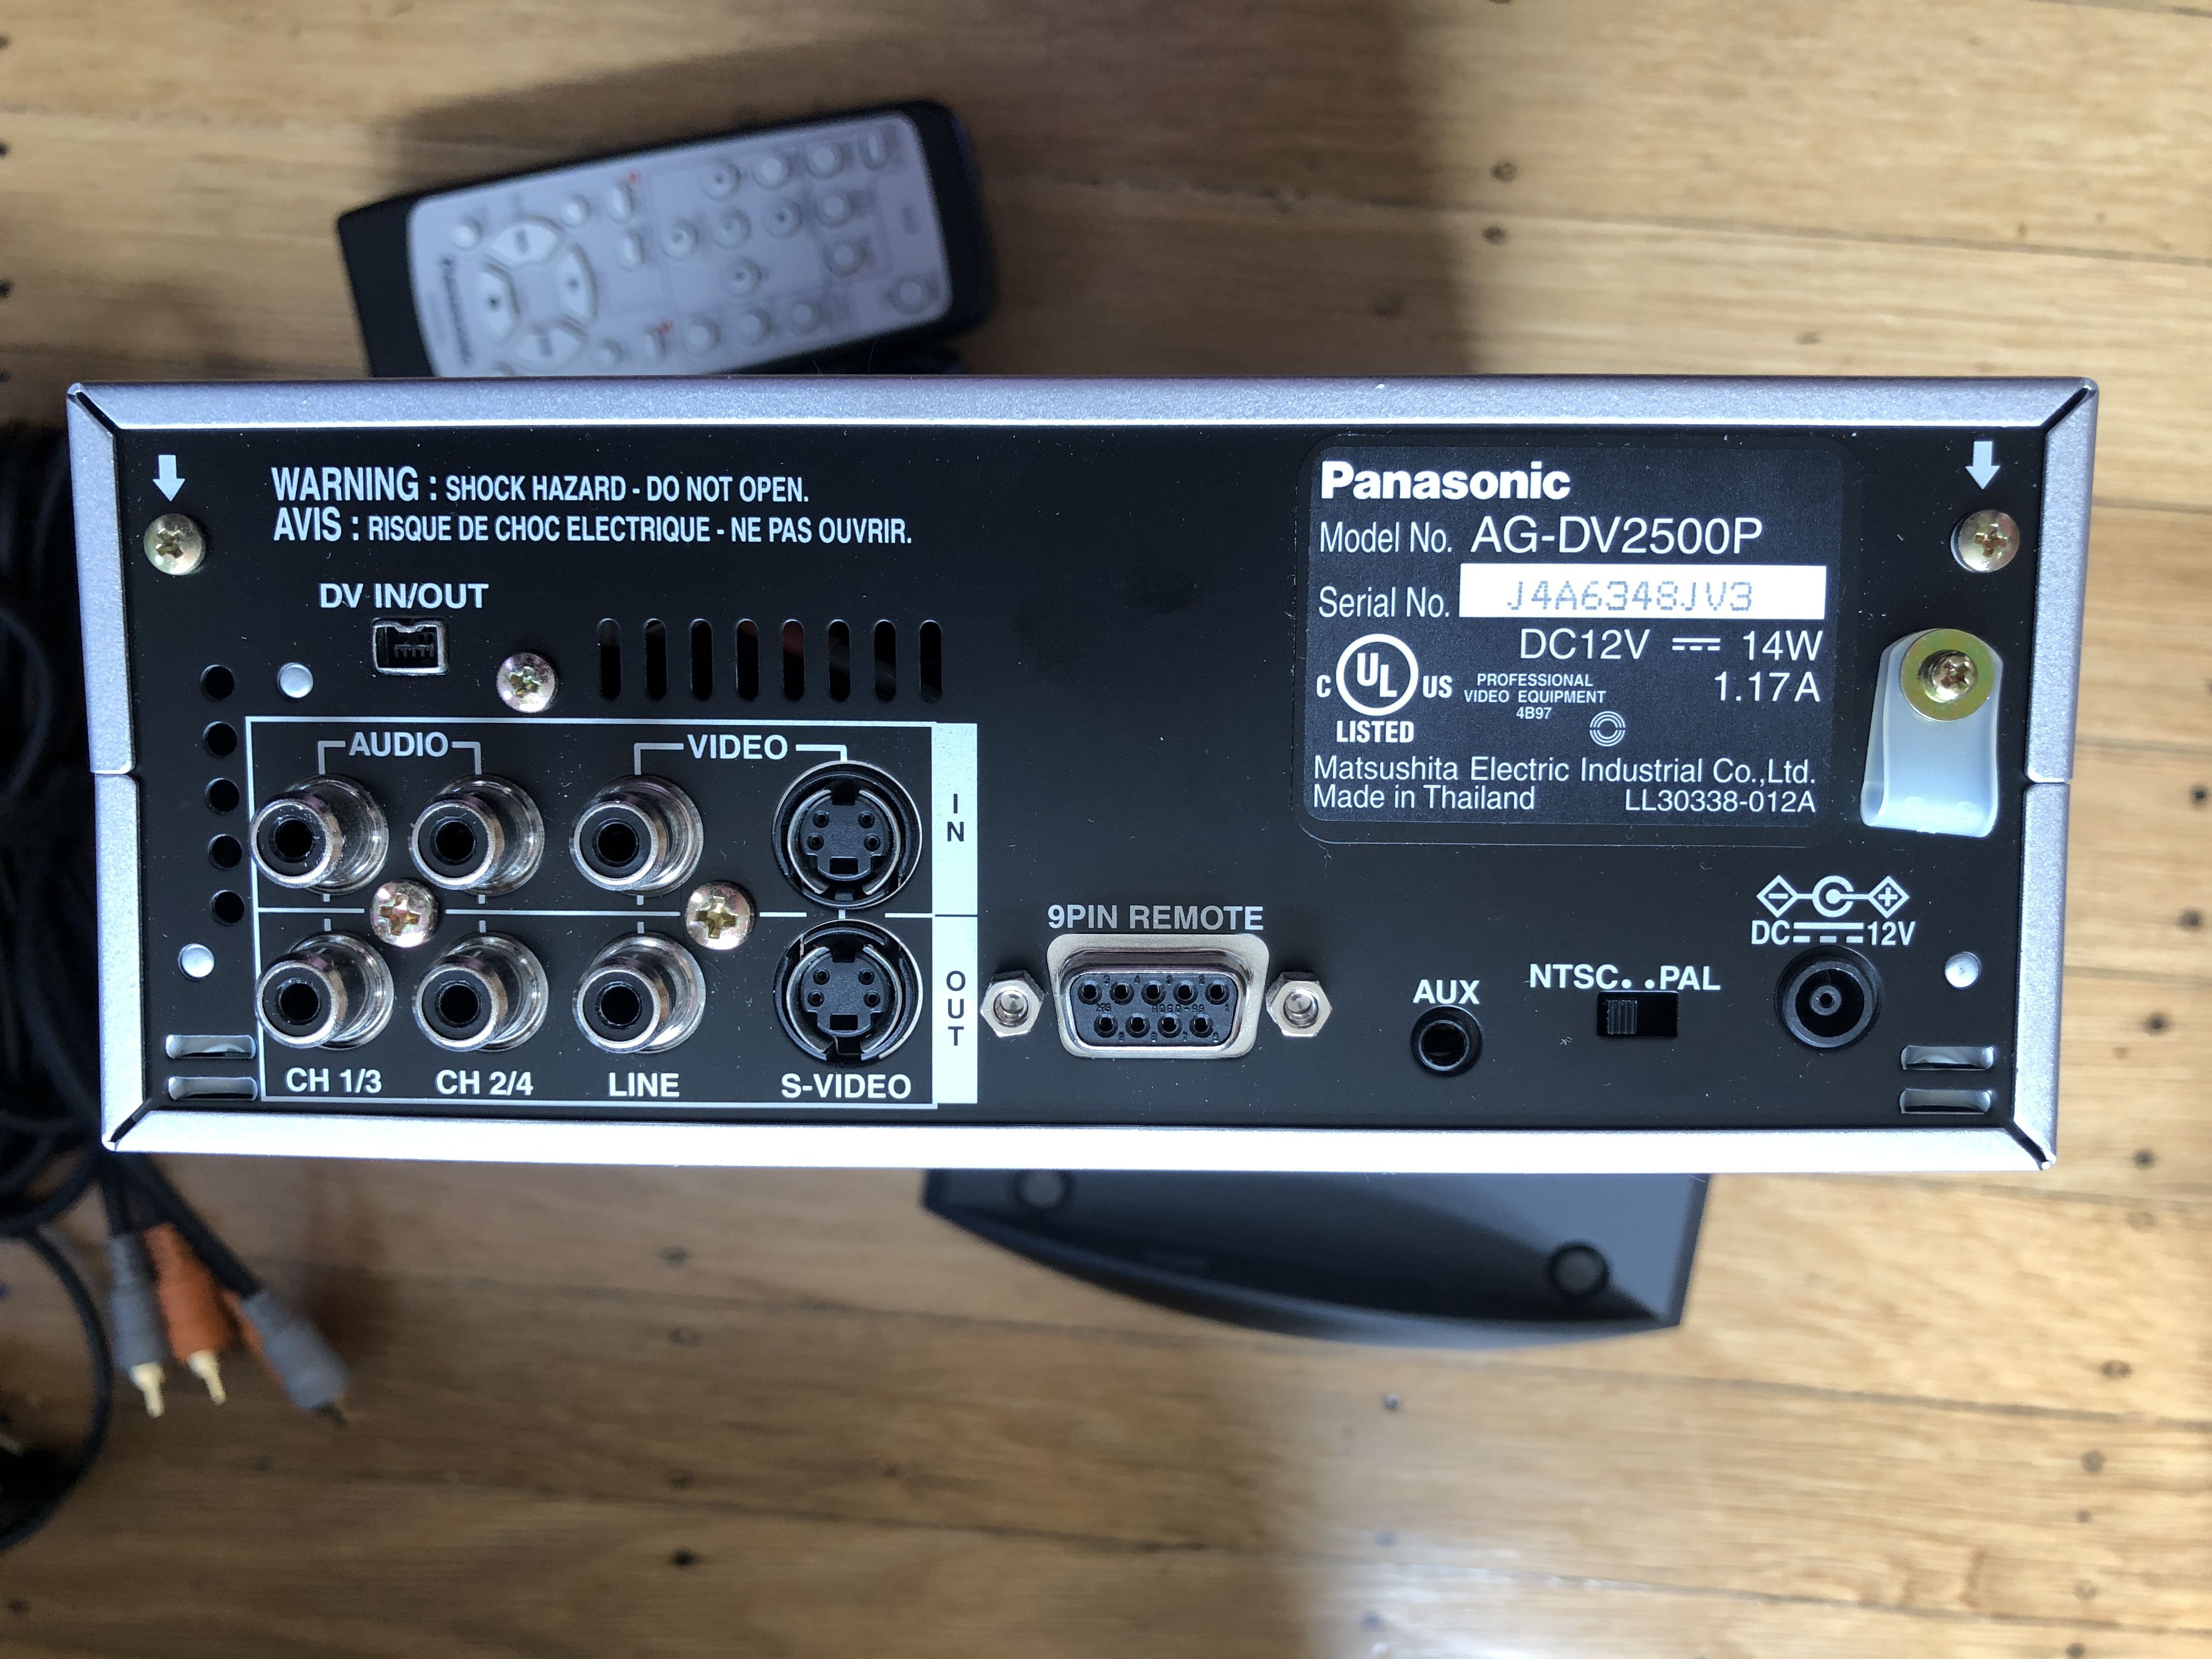 Panasonic DV deck (AG-DV2500P)